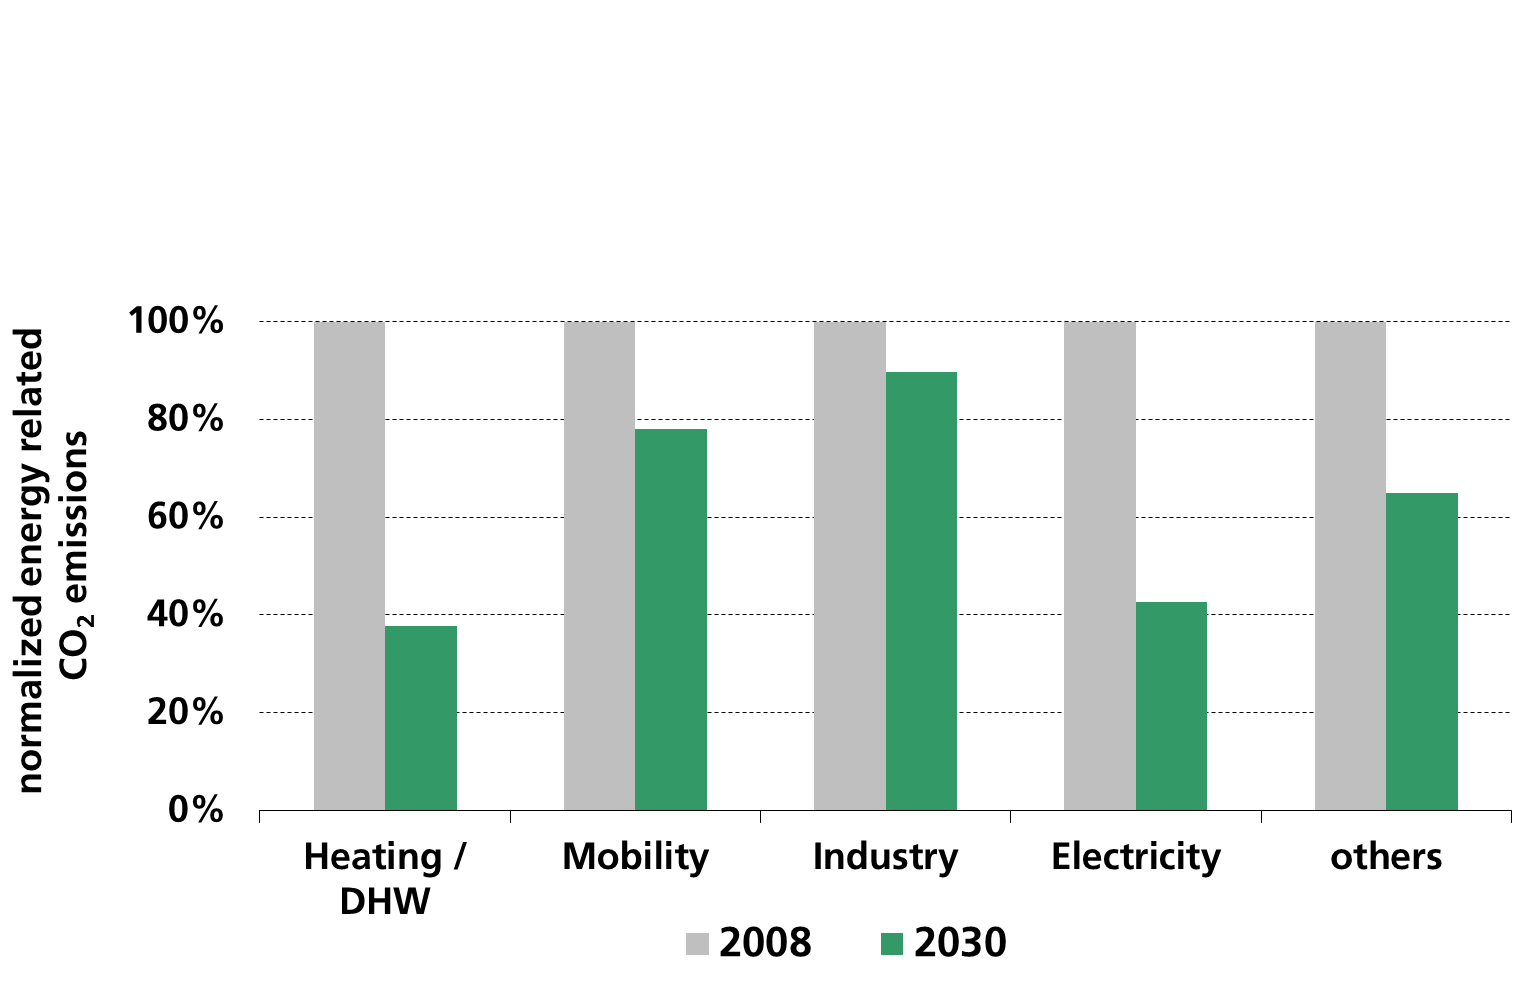 source: "Politikszenarien für den Klima-schutz VI - Treibhausgas-Emissionsszenarien bis zum Jahr 2030. Öko-Institut et al.